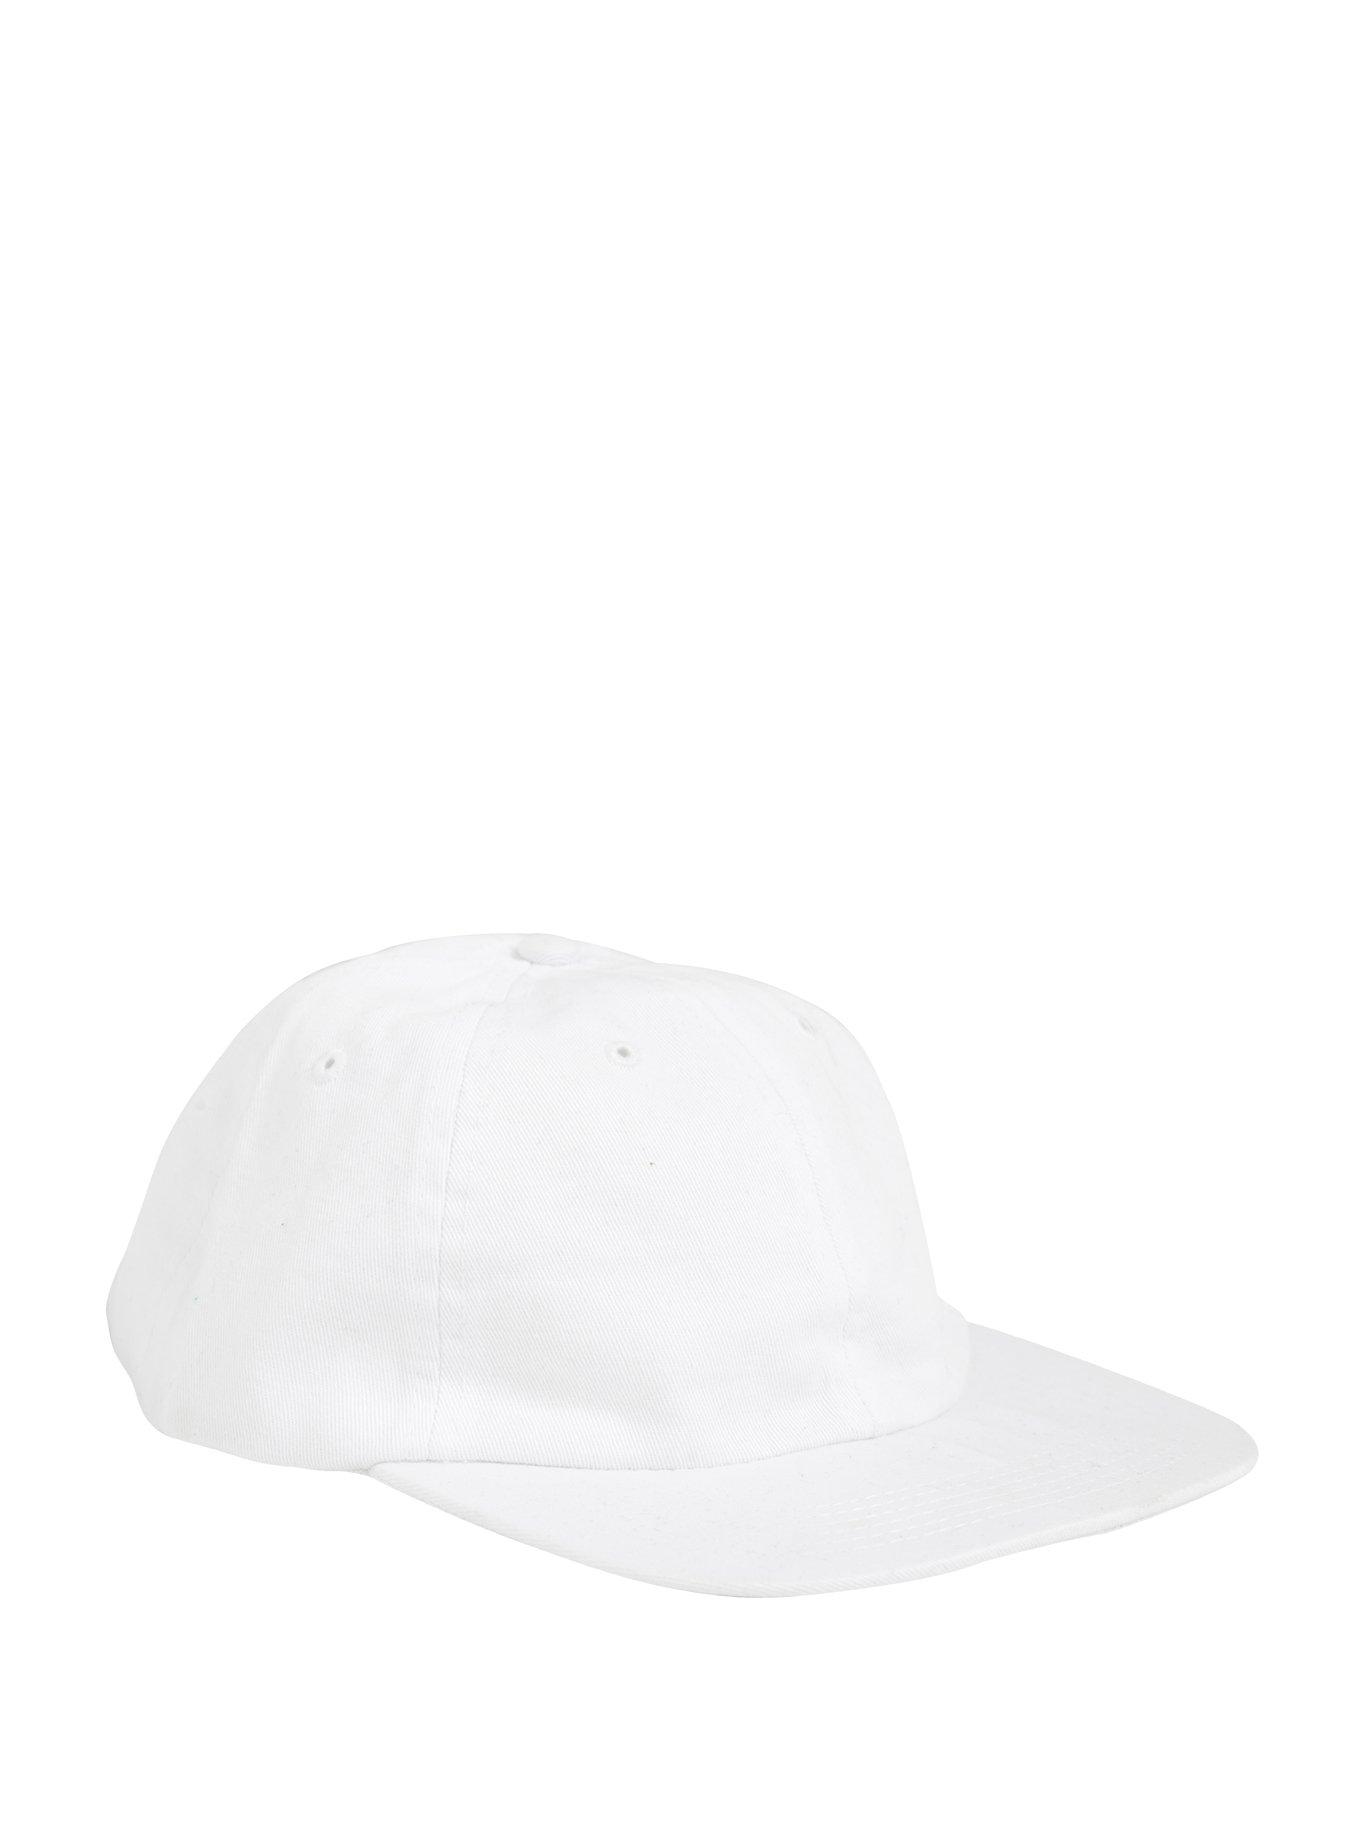 White Curve Brim Ball Cap, , alternate